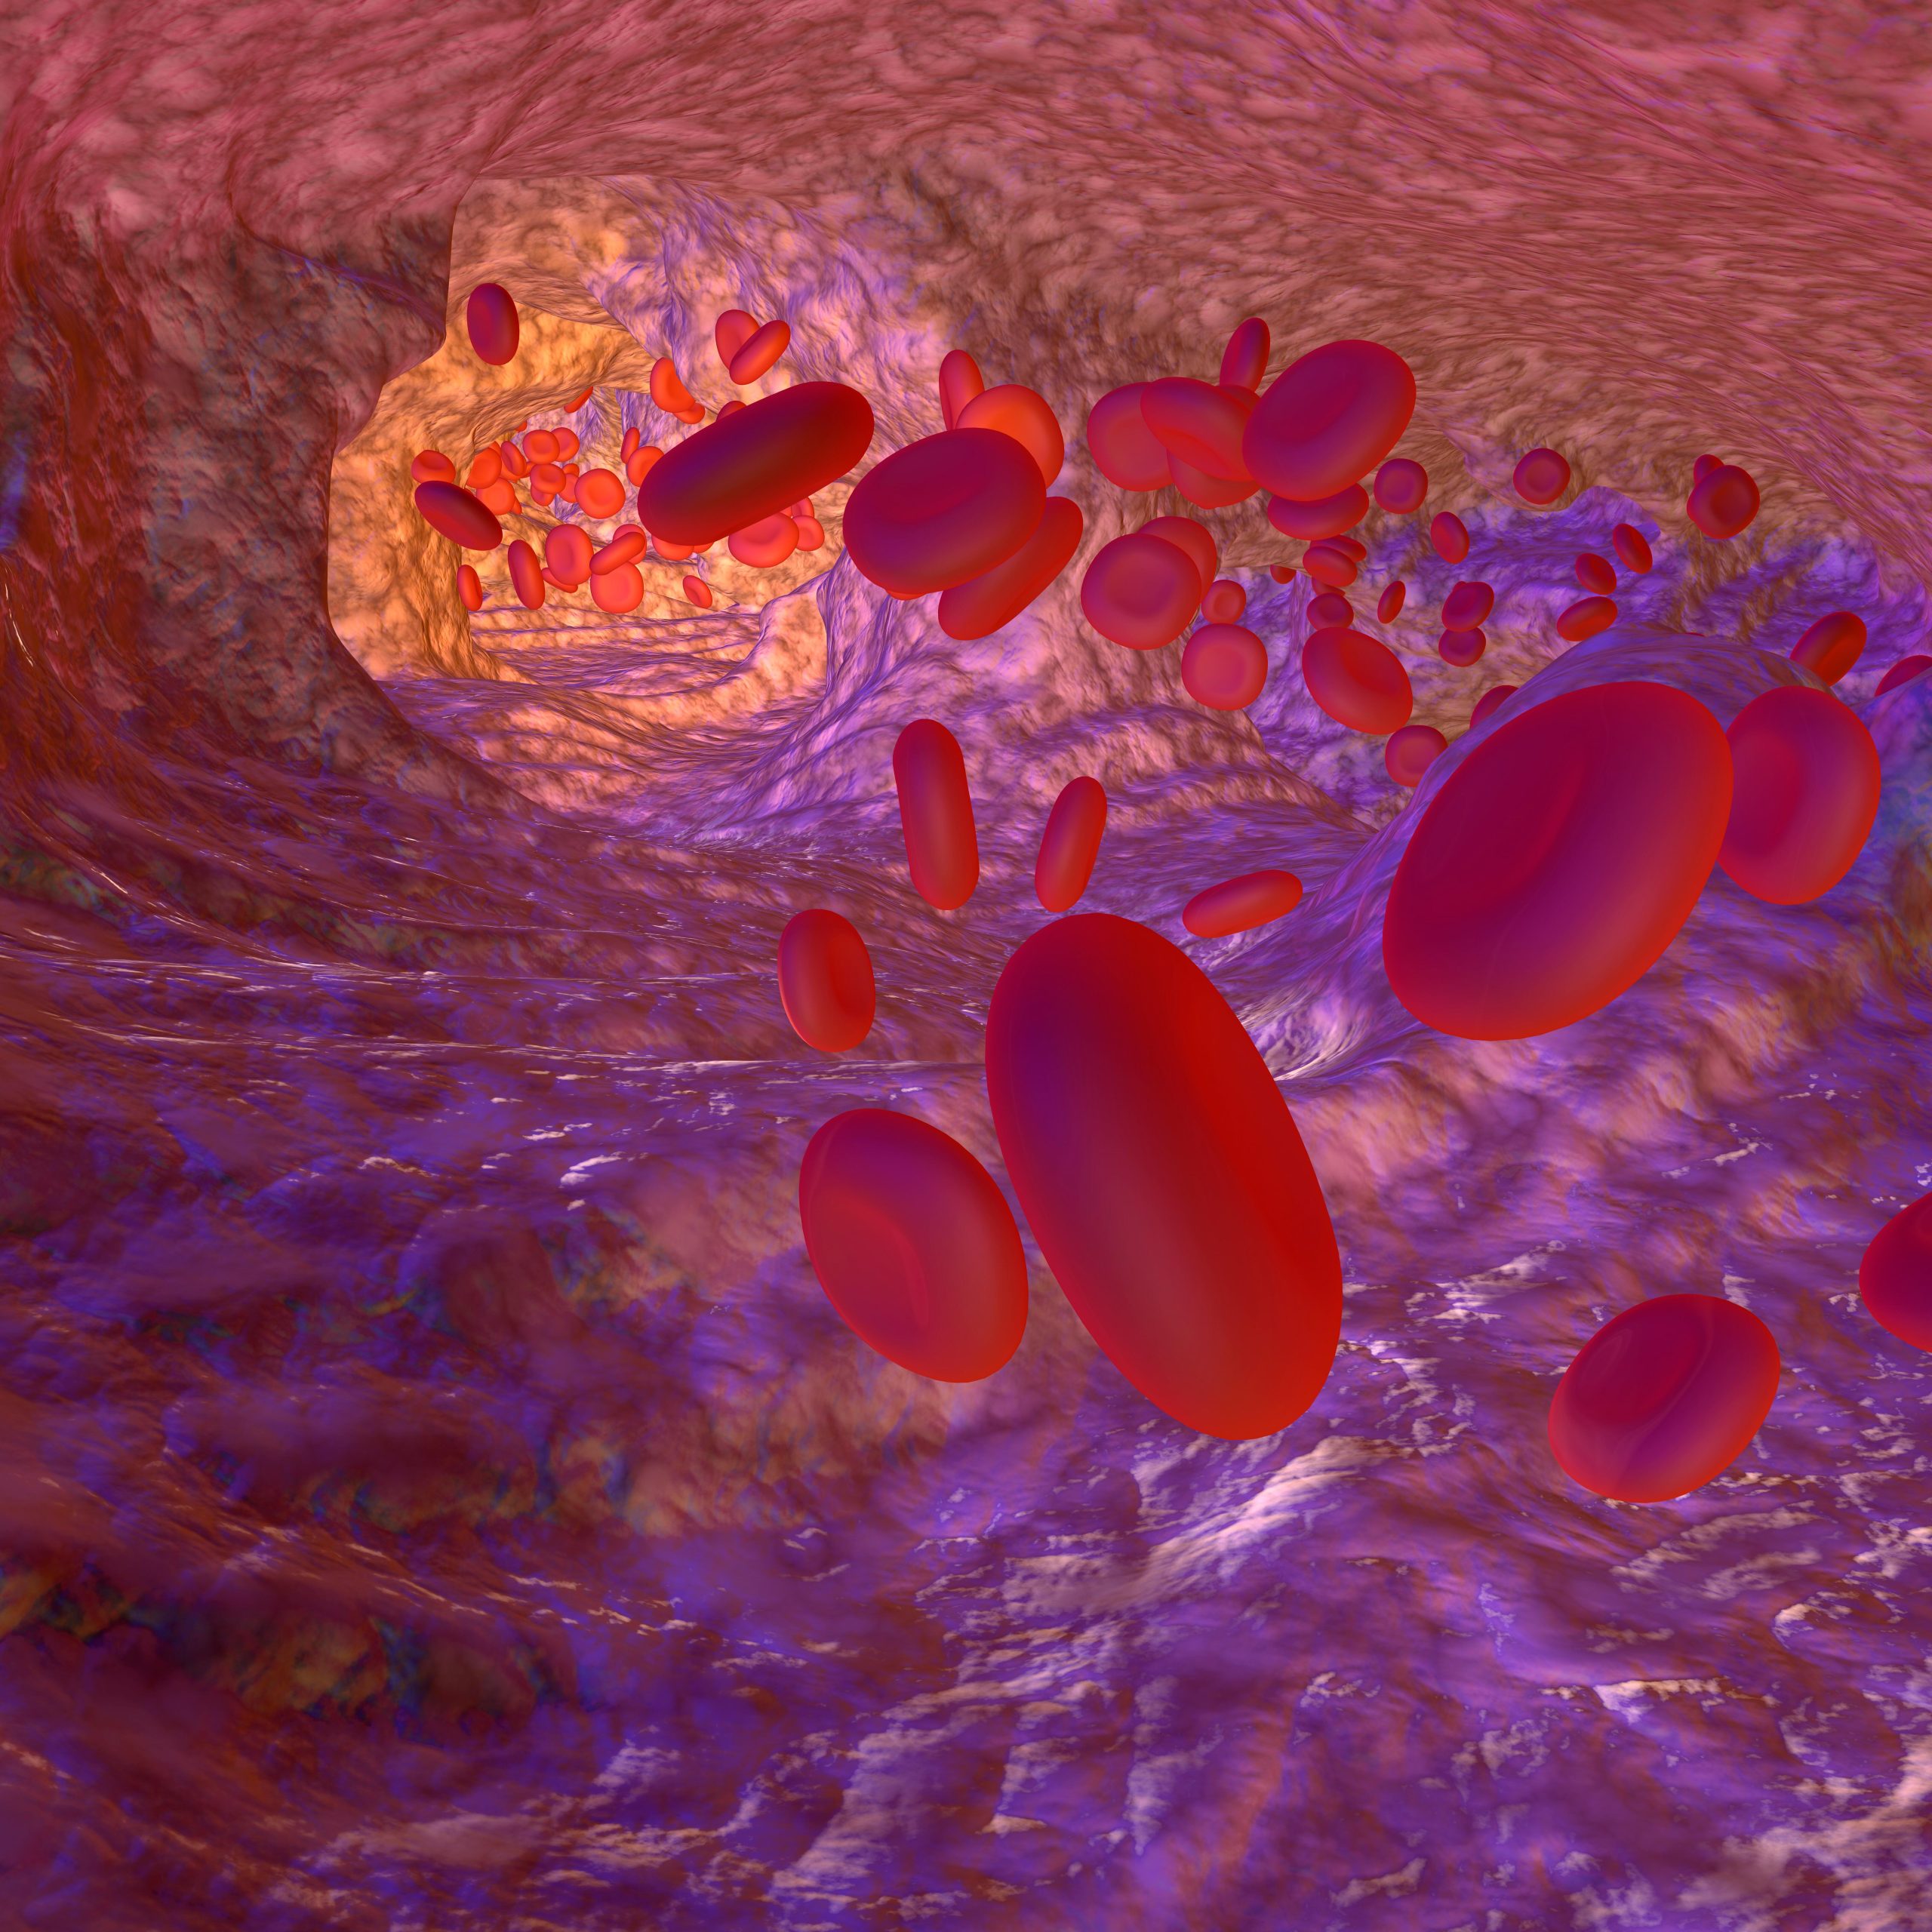 Simple Blood Test Can Now Diagnose De Vivo Disease thumbnail